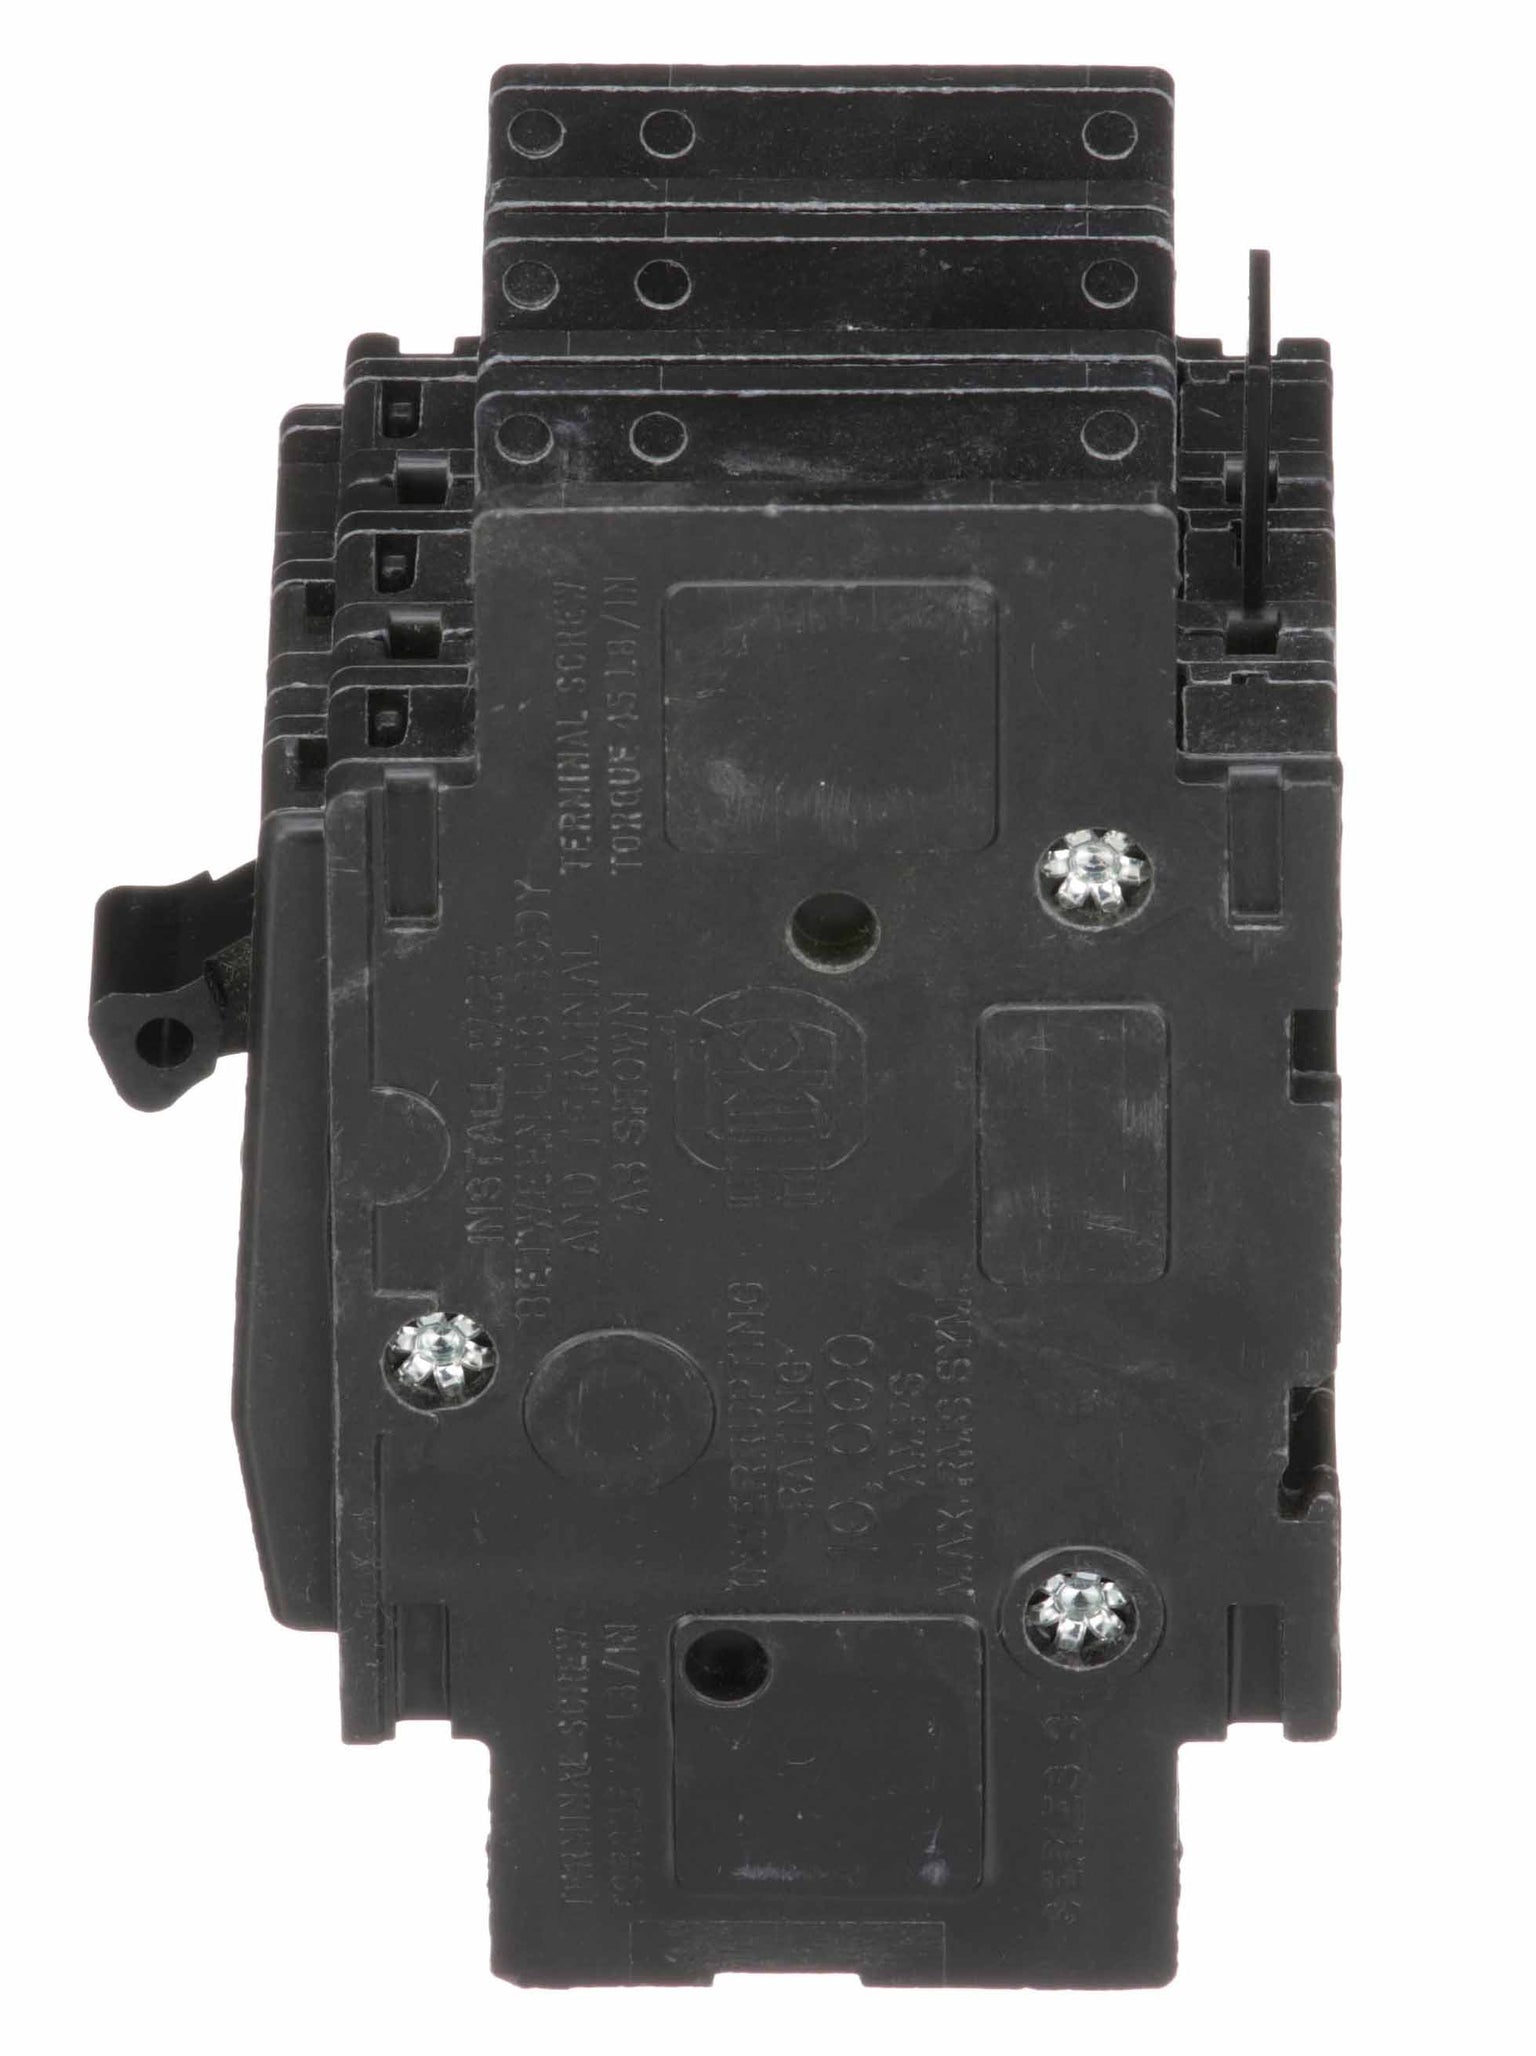 QOU350 - Square D - 50 Amp Circuit Breaker